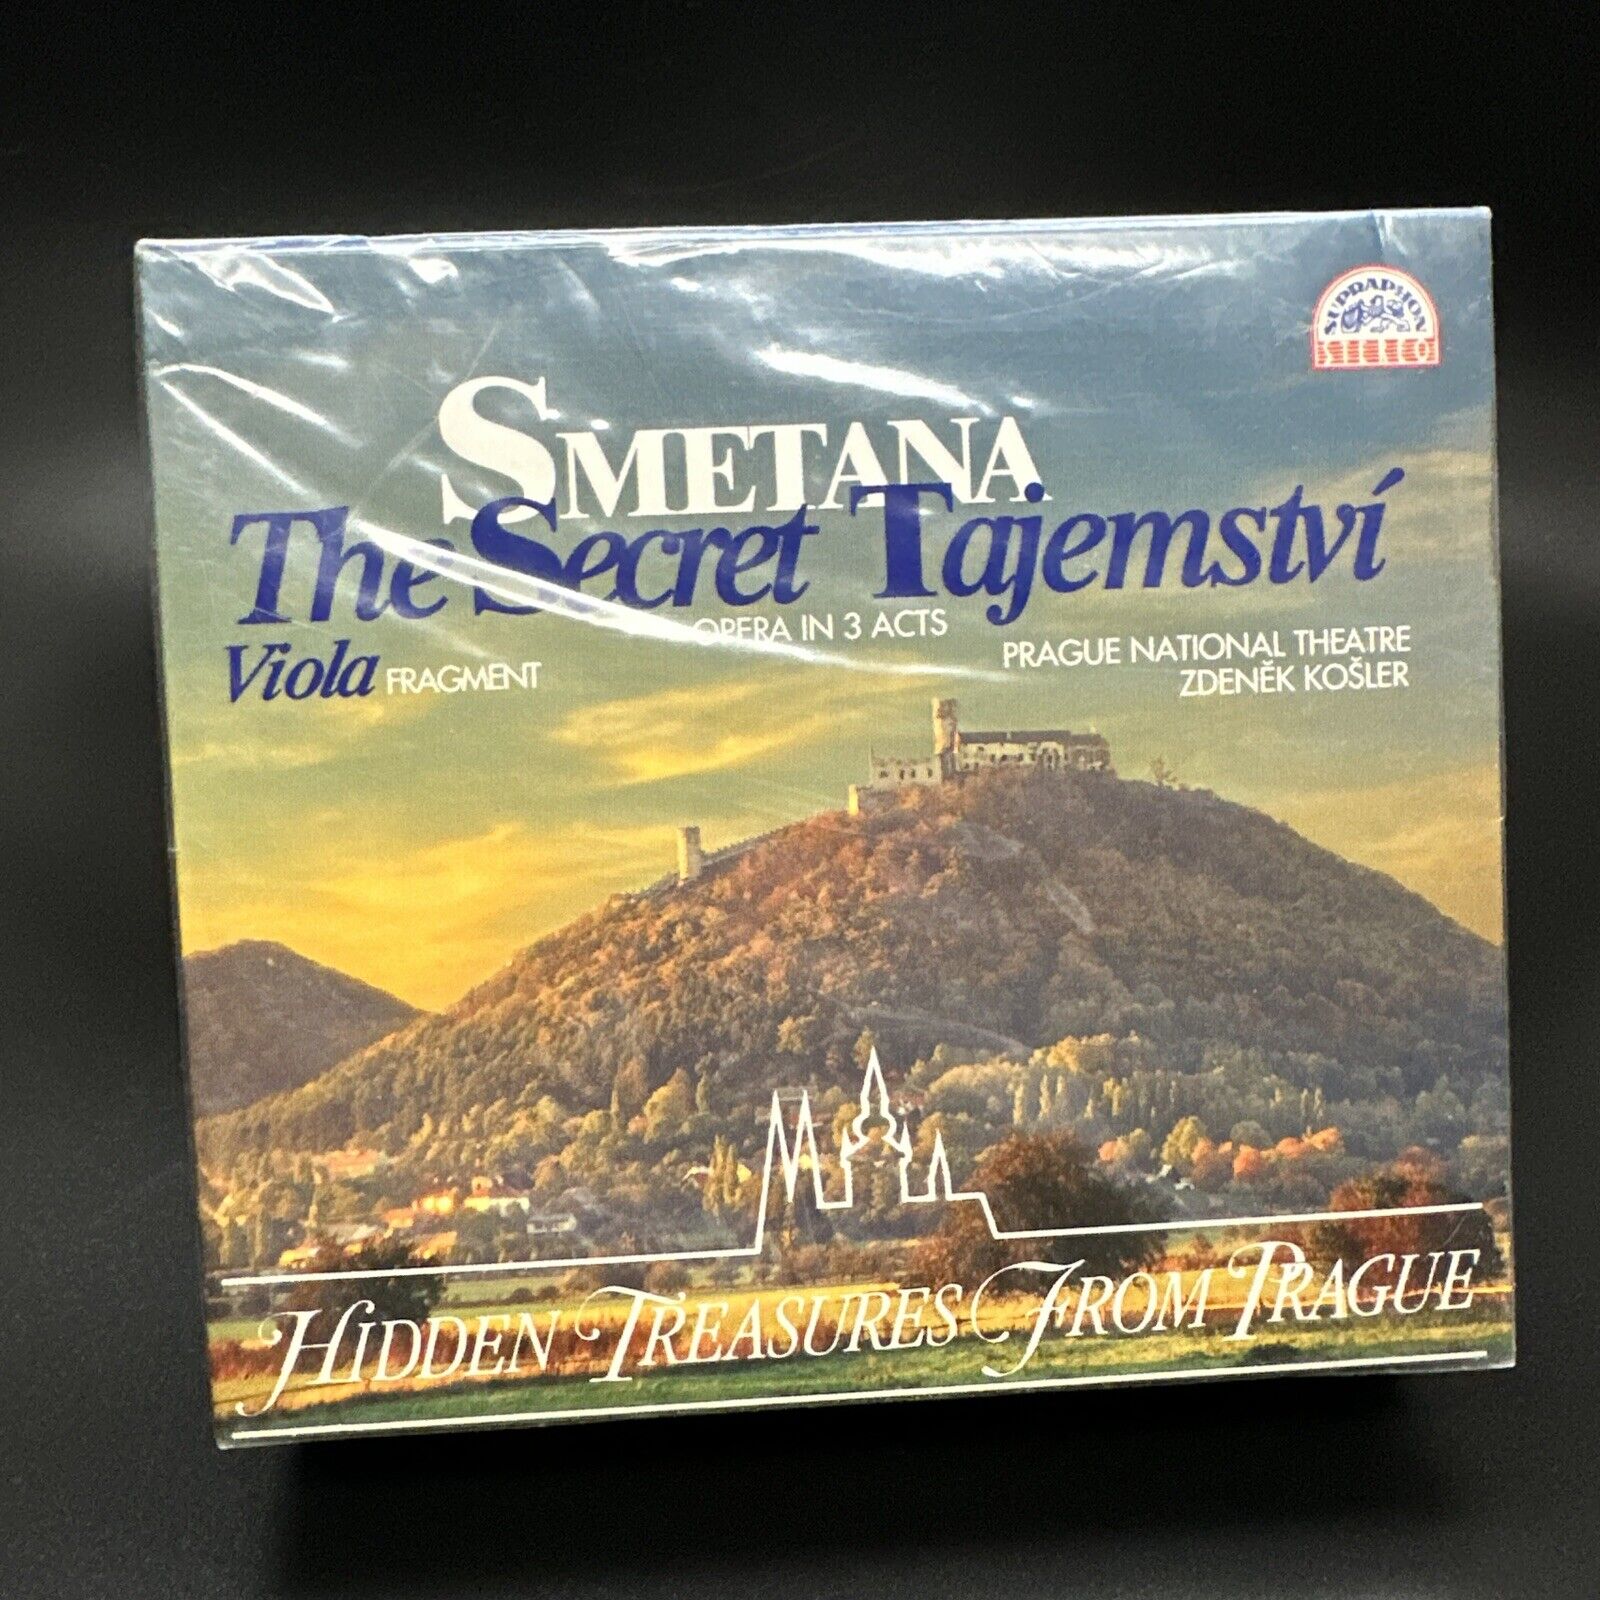 Smetana THE SECRET TAJEMSTVI, Kosler [Supraphon 2 CD Box Set] SEALED VERY RARE